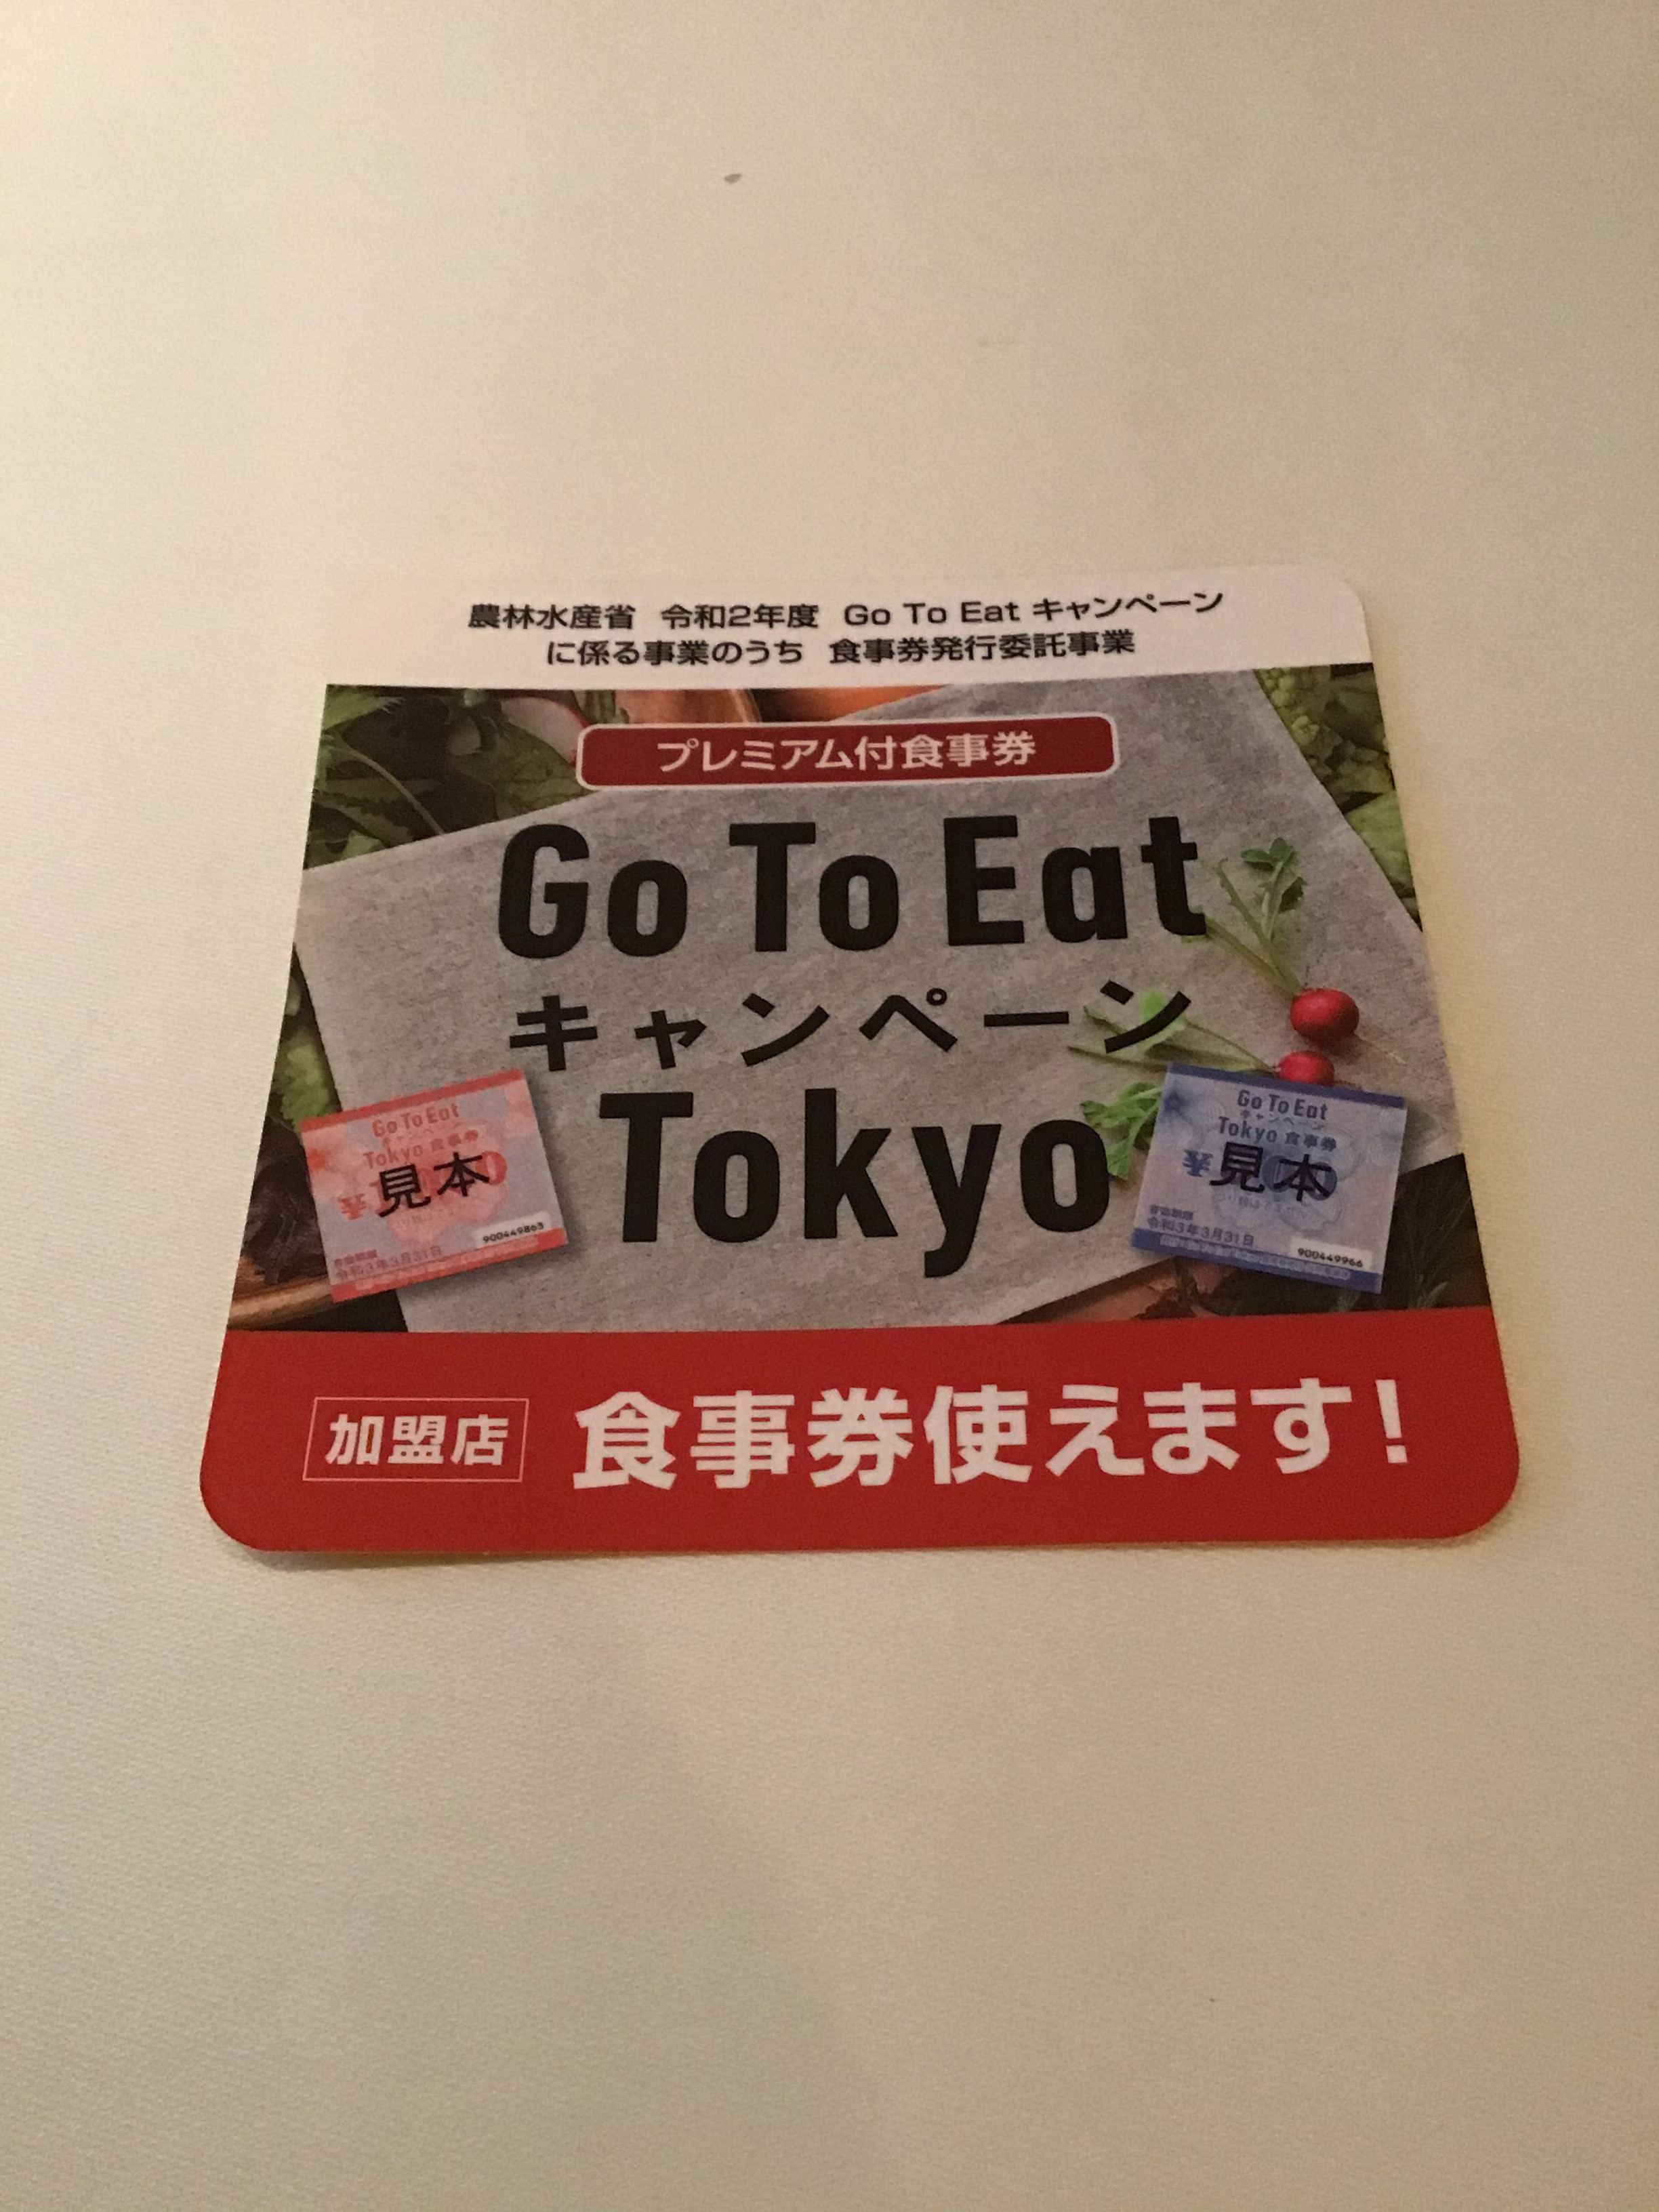 Go To Eat キャンペーン Tokyo 食事券ご利用いただけます